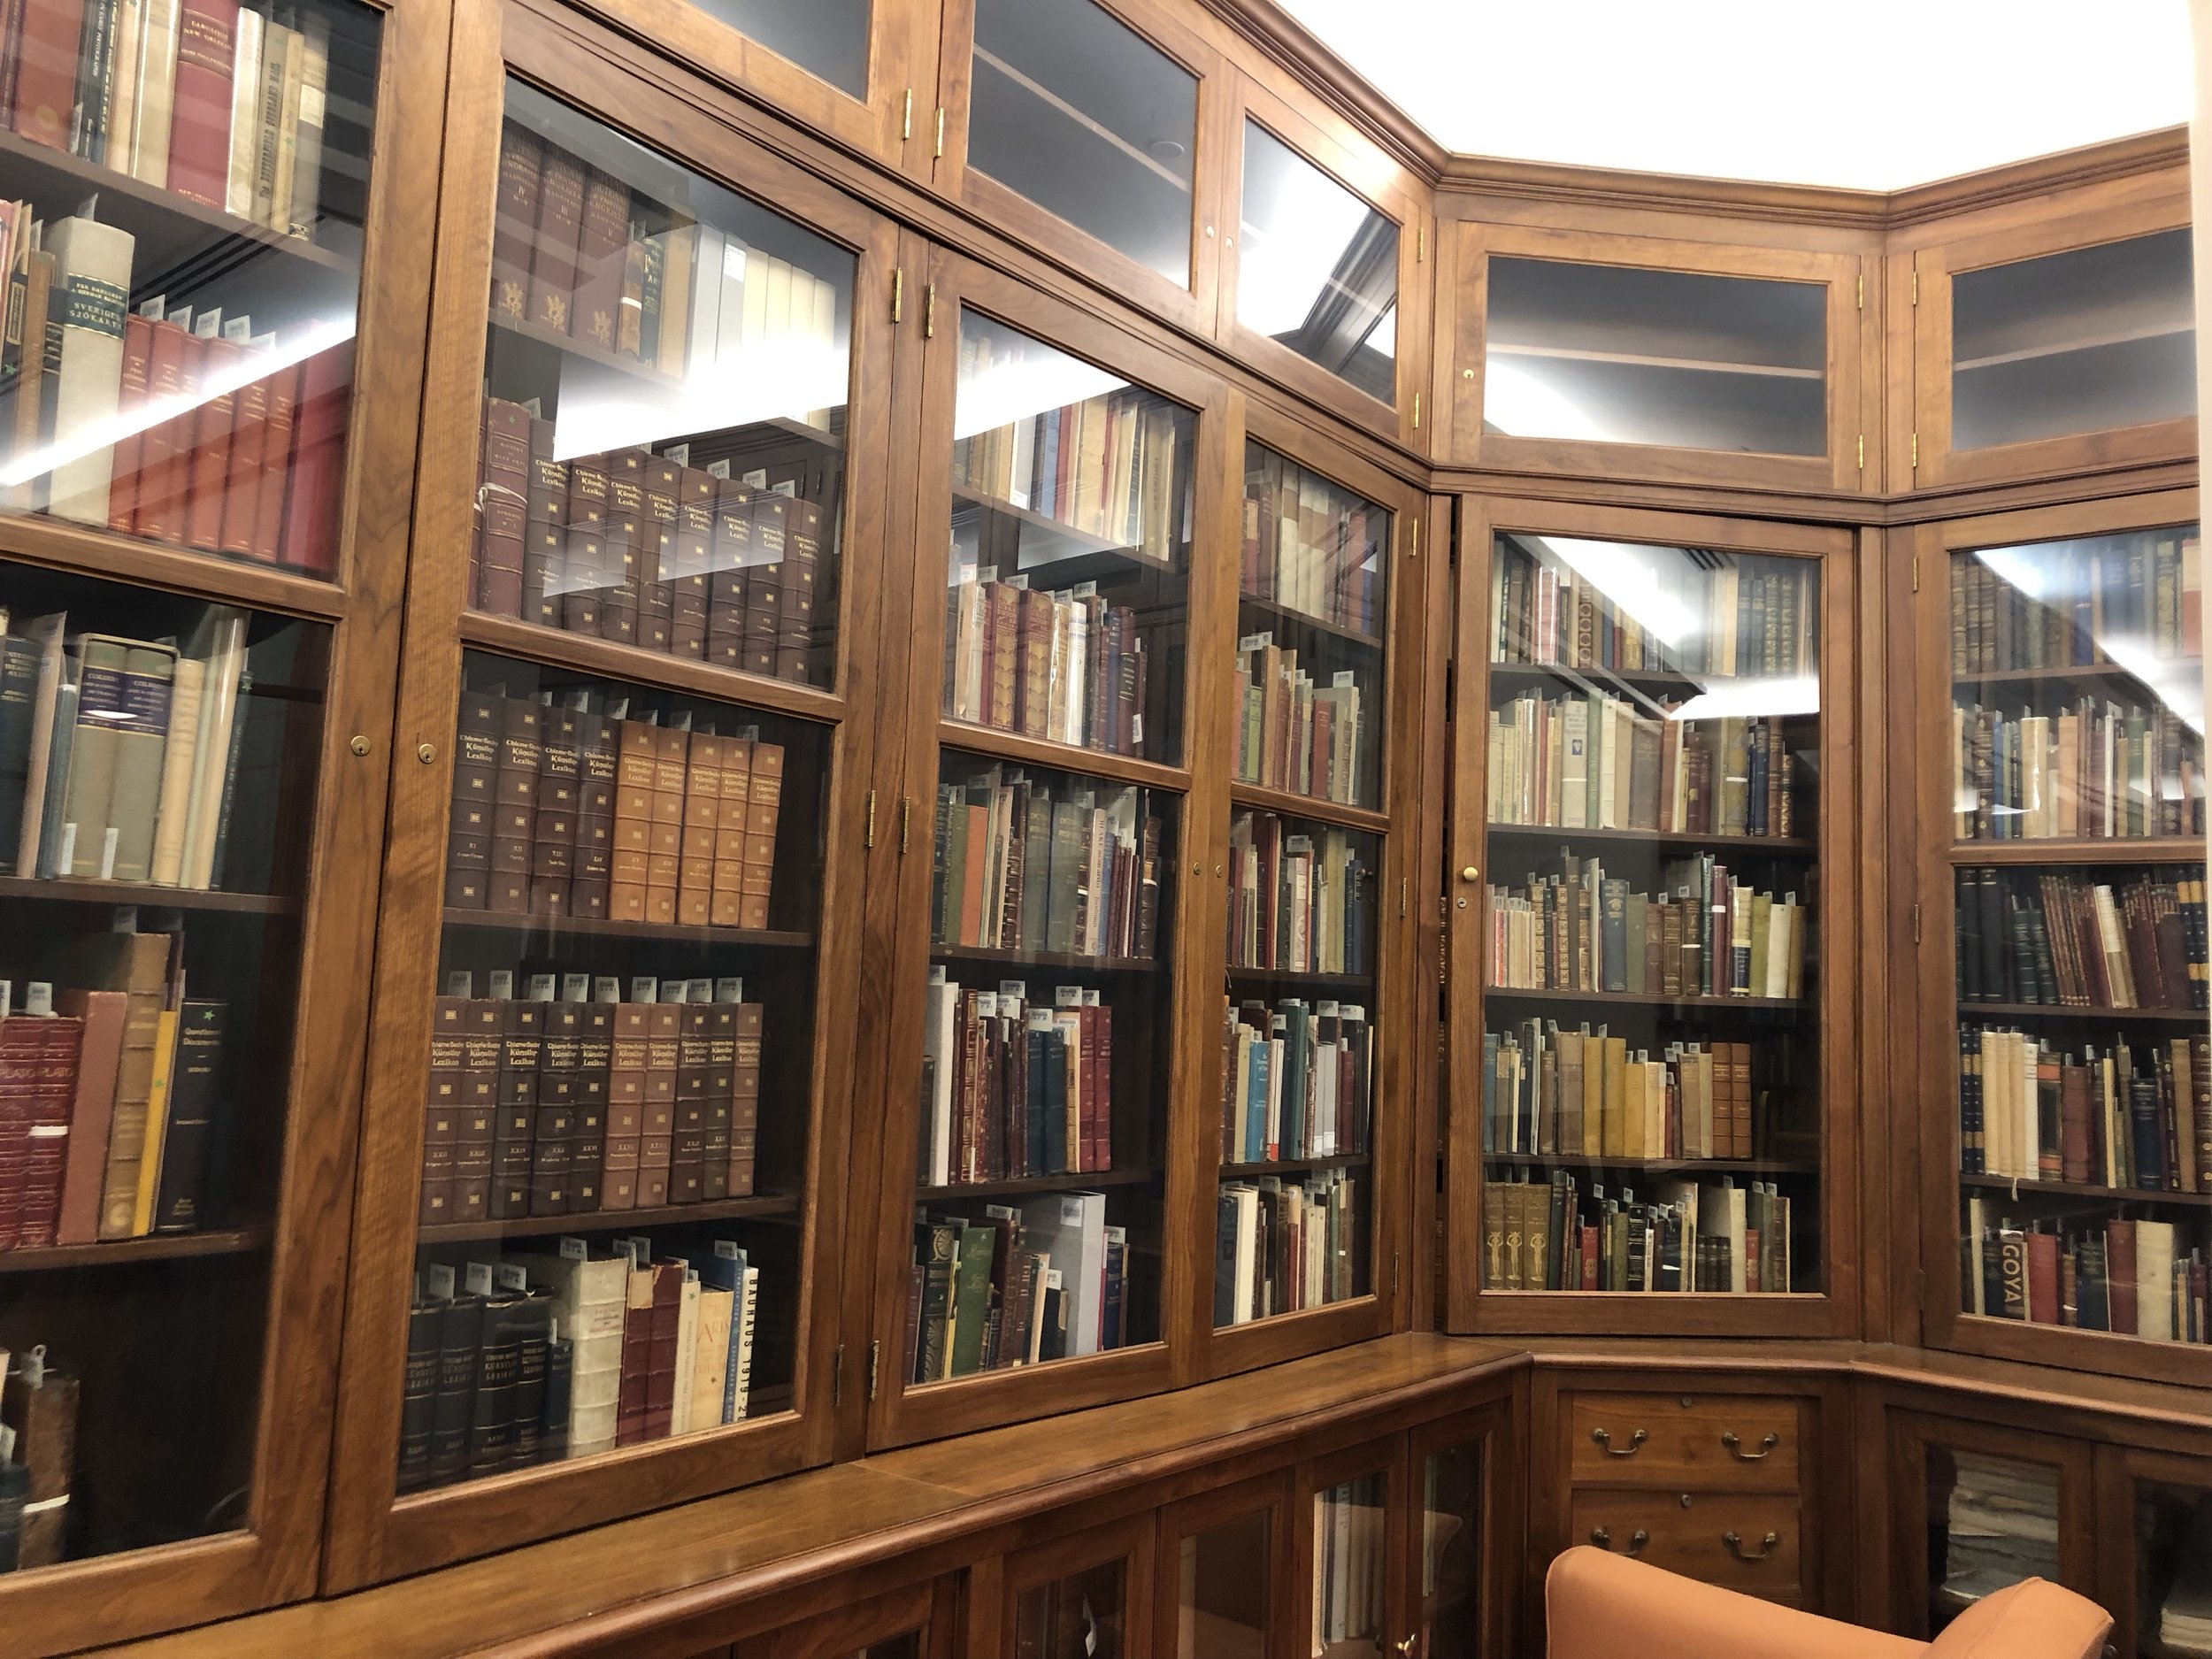 The Rare Book Room